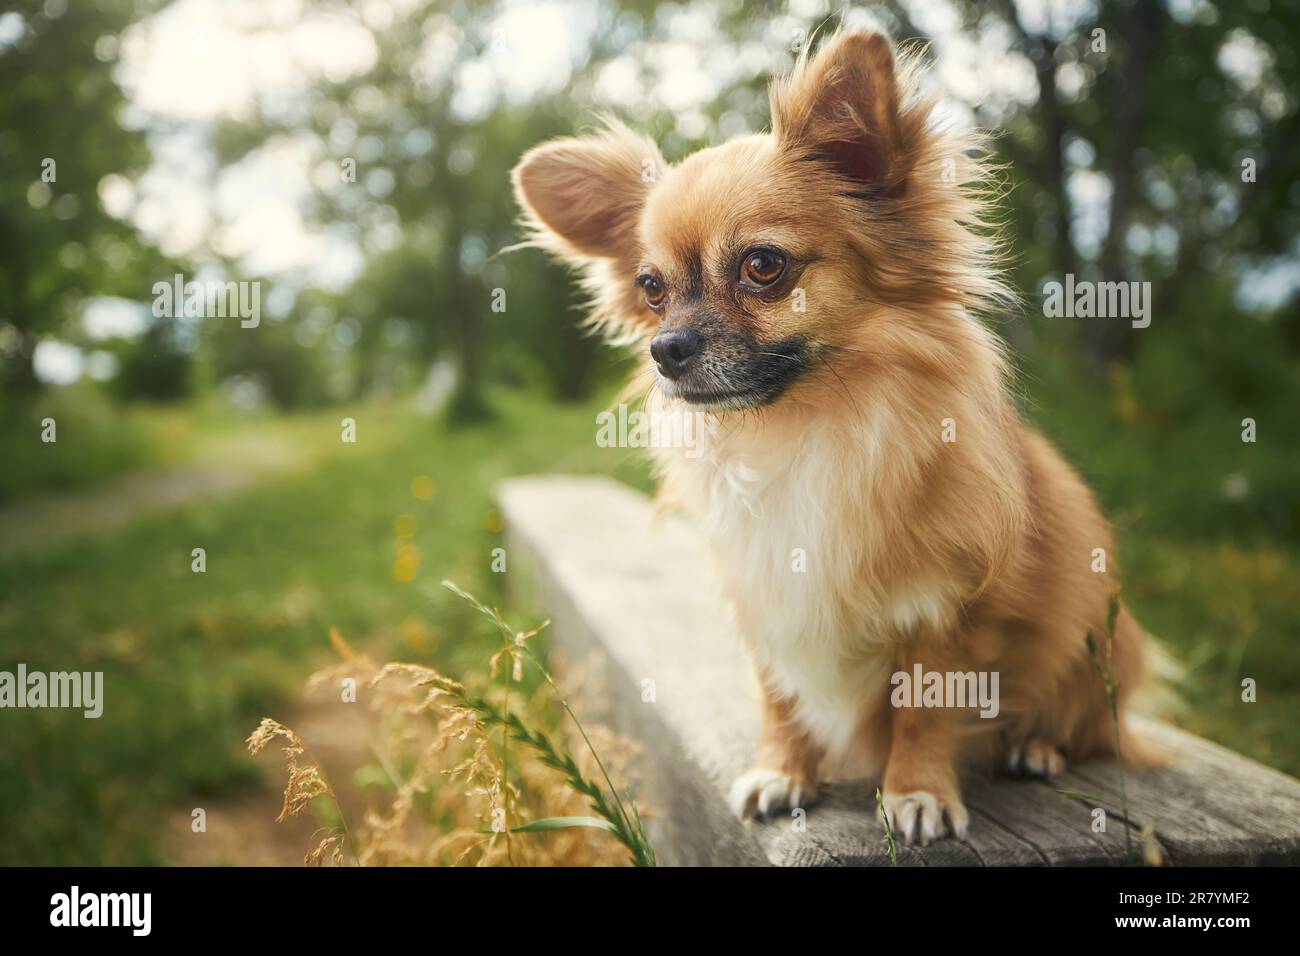 Porträt eines langhaarigen chihuahua. Kleiner Hund, der auf einer Holzbank im öffentlichen Park sitzt und seltsamerweise in die Kamera schaut. Stockfoto